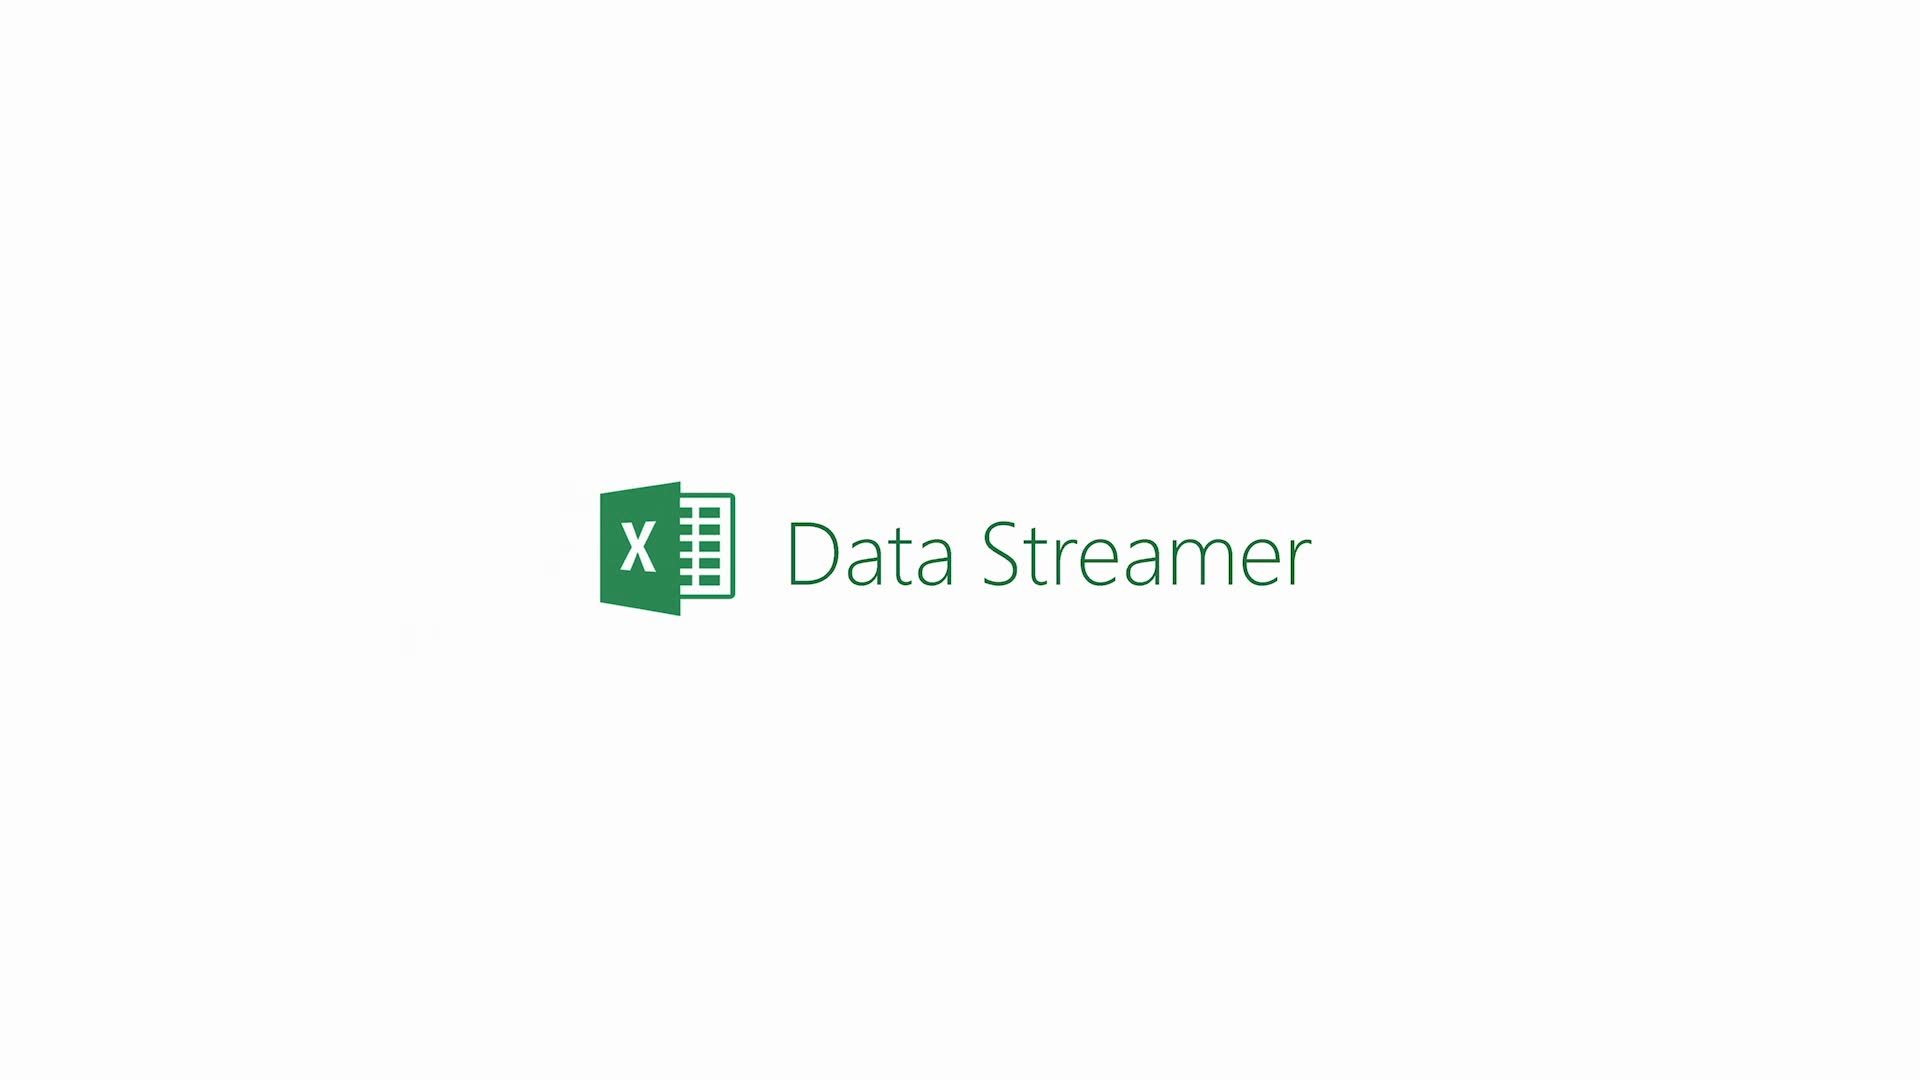 O que é o Streamer de Dados? - Suporte da Microsoft